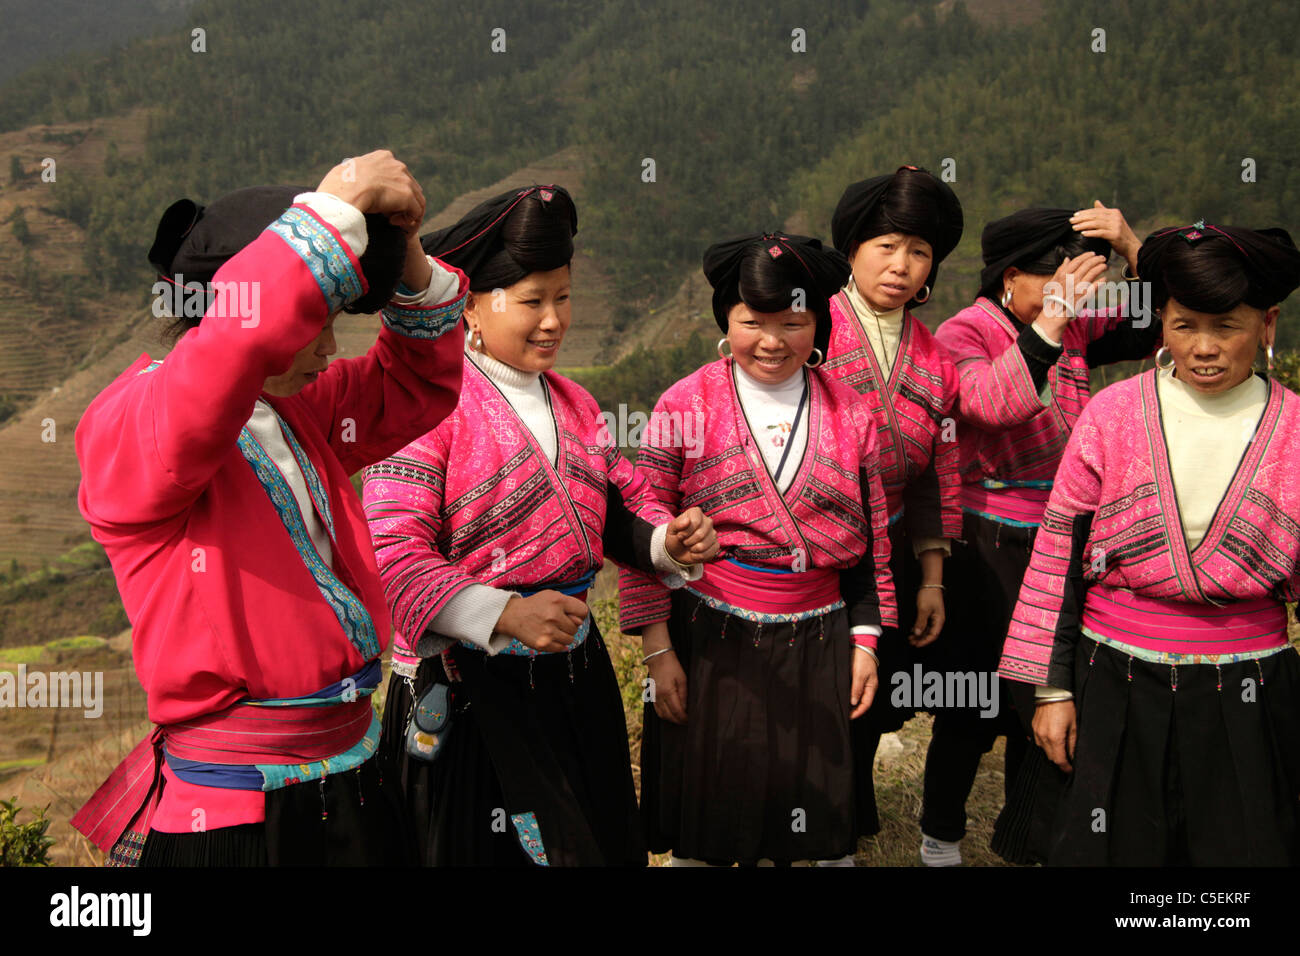 Les femmes de la minorité Yao avec costumes traditionnels et leur caractéristique hairstyle à Ping An près de Longsheng, Guangxi, Chine Banque D'Images